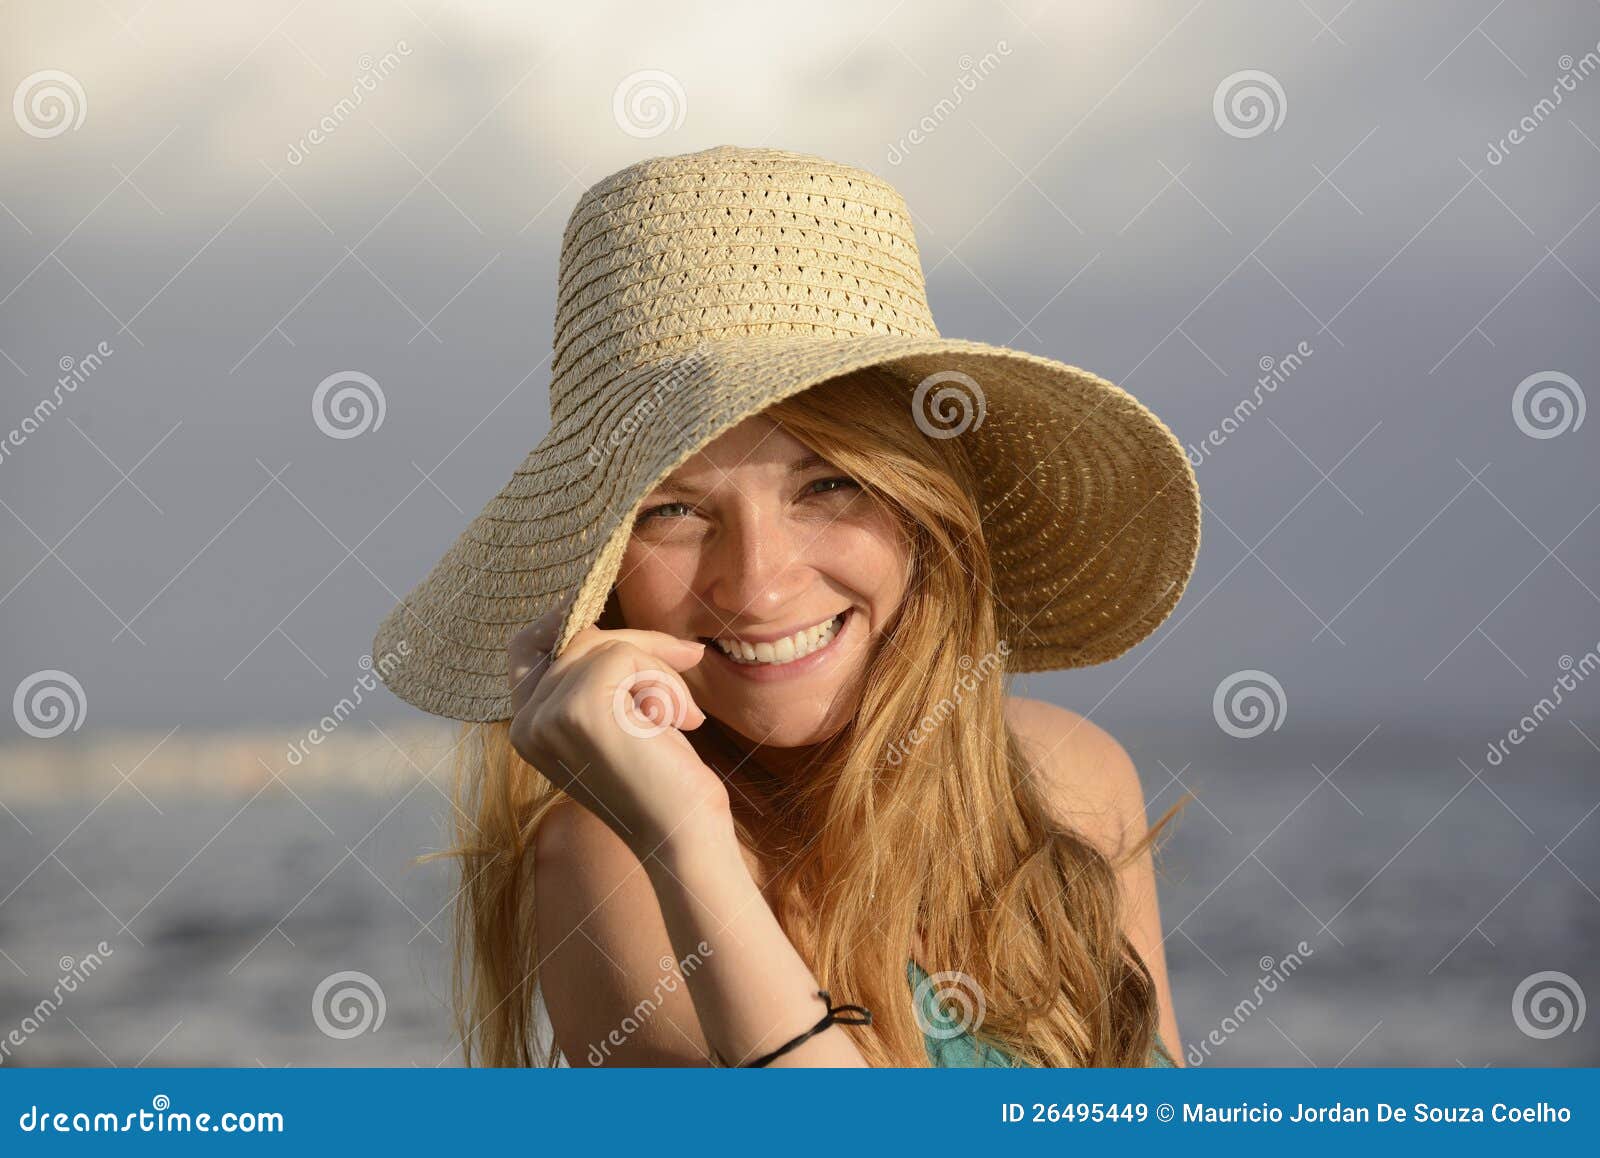 Ξανθή γυναίκα με το ψαθάκι στην παραλία. Ξανθή γυναίκα με το ψαθάκι στο γέλιο παραλιών